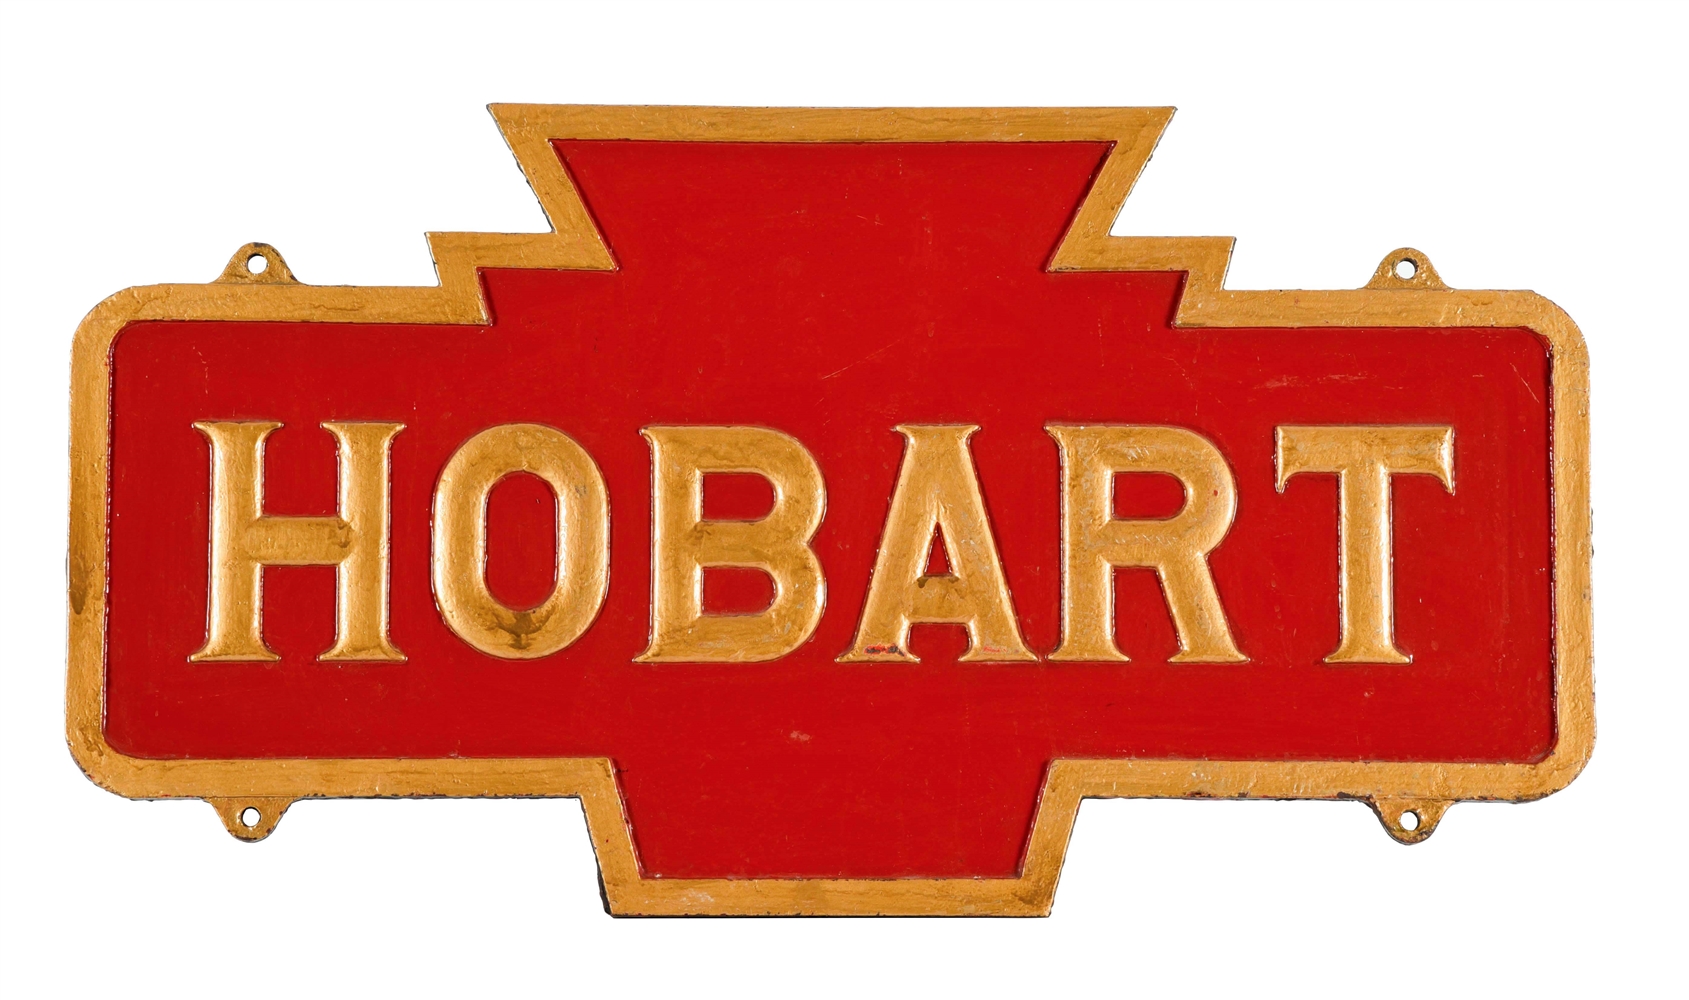 PRR "HOBART" STATION SIGN.